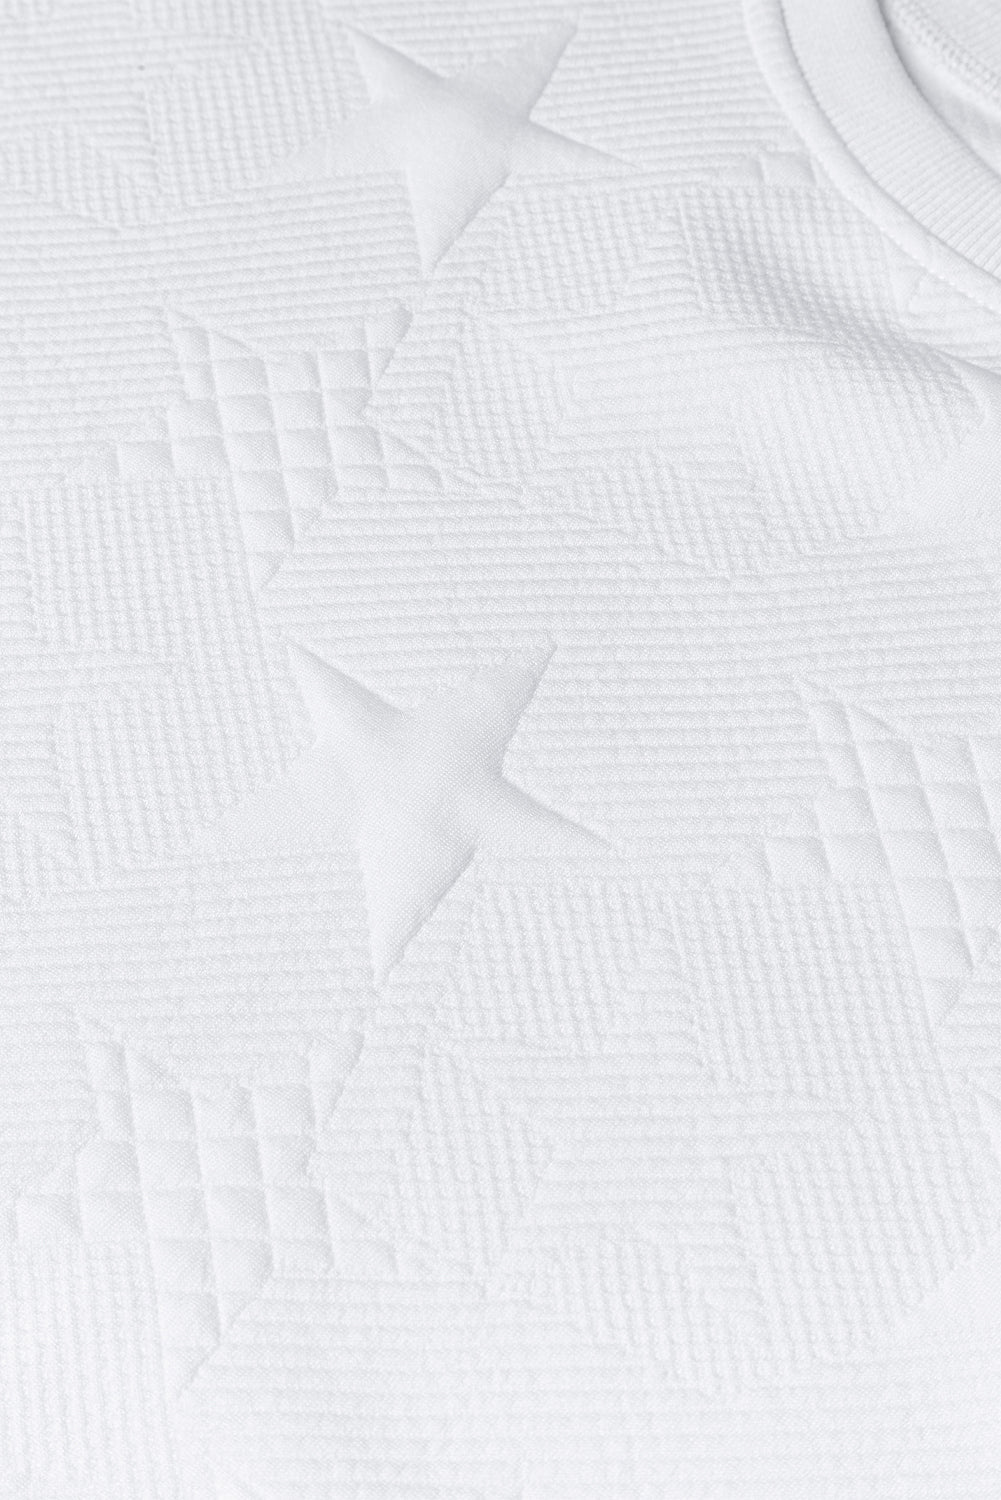 Pulover s spuščenimi rameni z vtisnjeno teksturo v obliki zvezd breskovega cveta